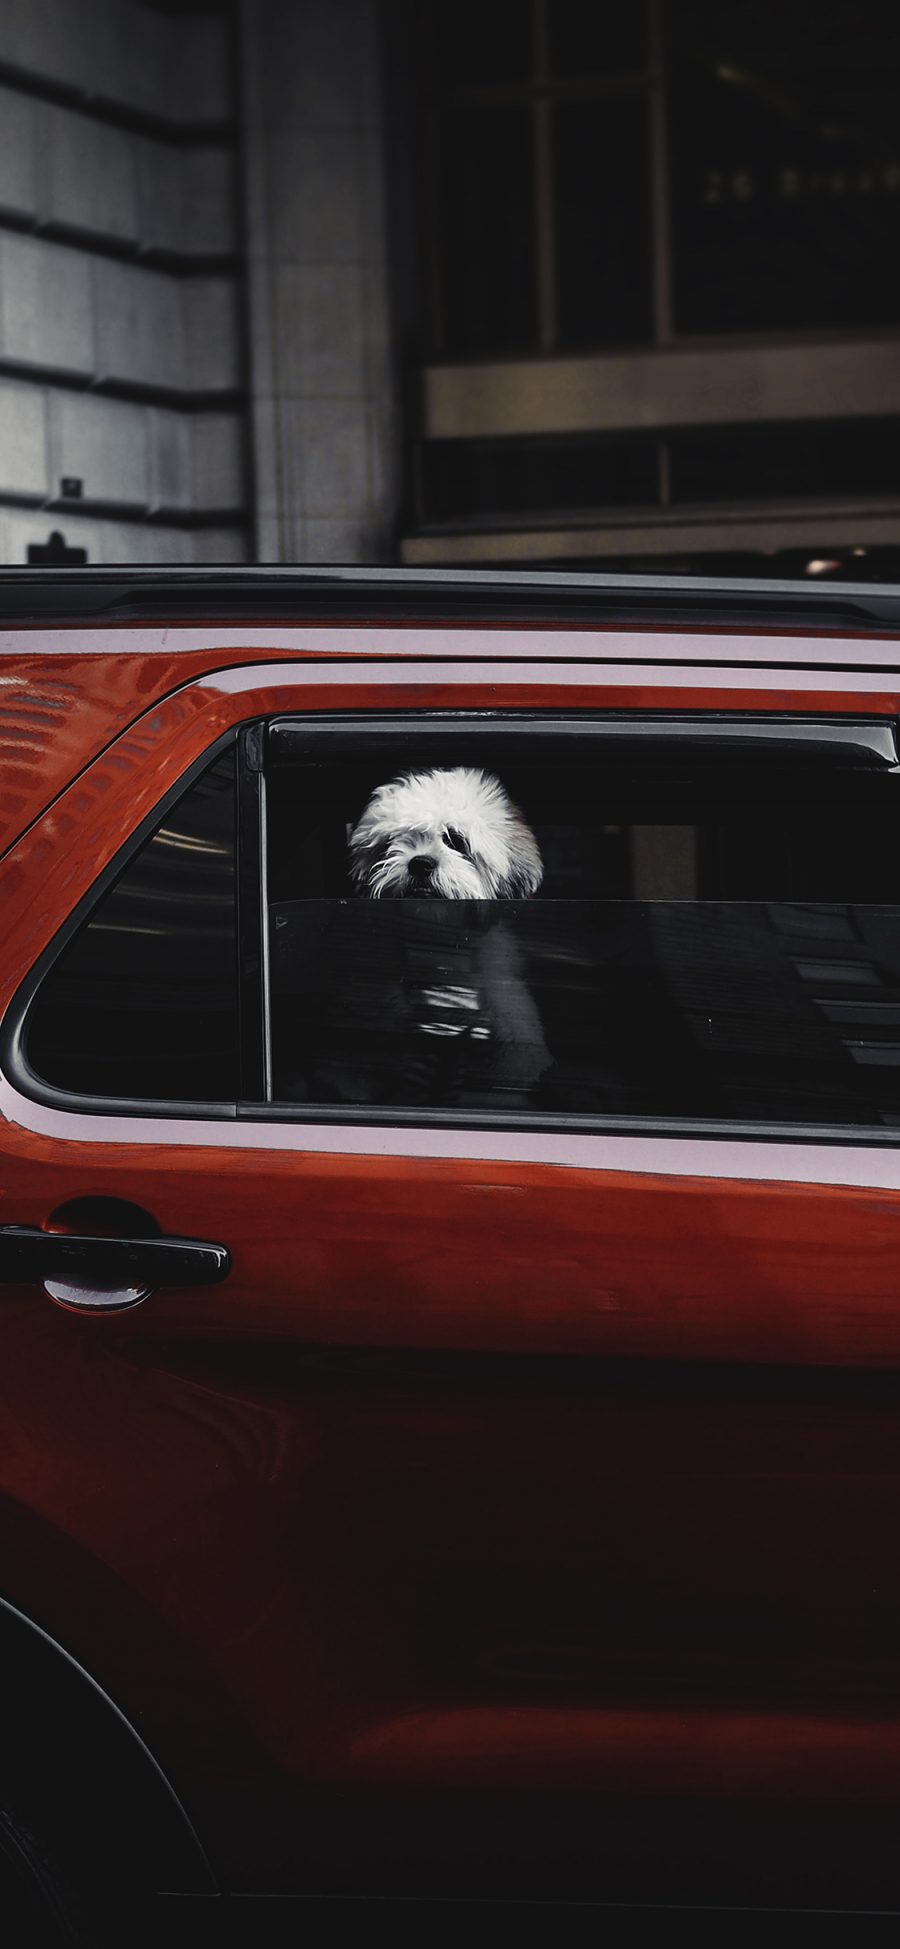 [2436×1125]汽车 红色 车窗 小狗 苹果手机壁纸图片